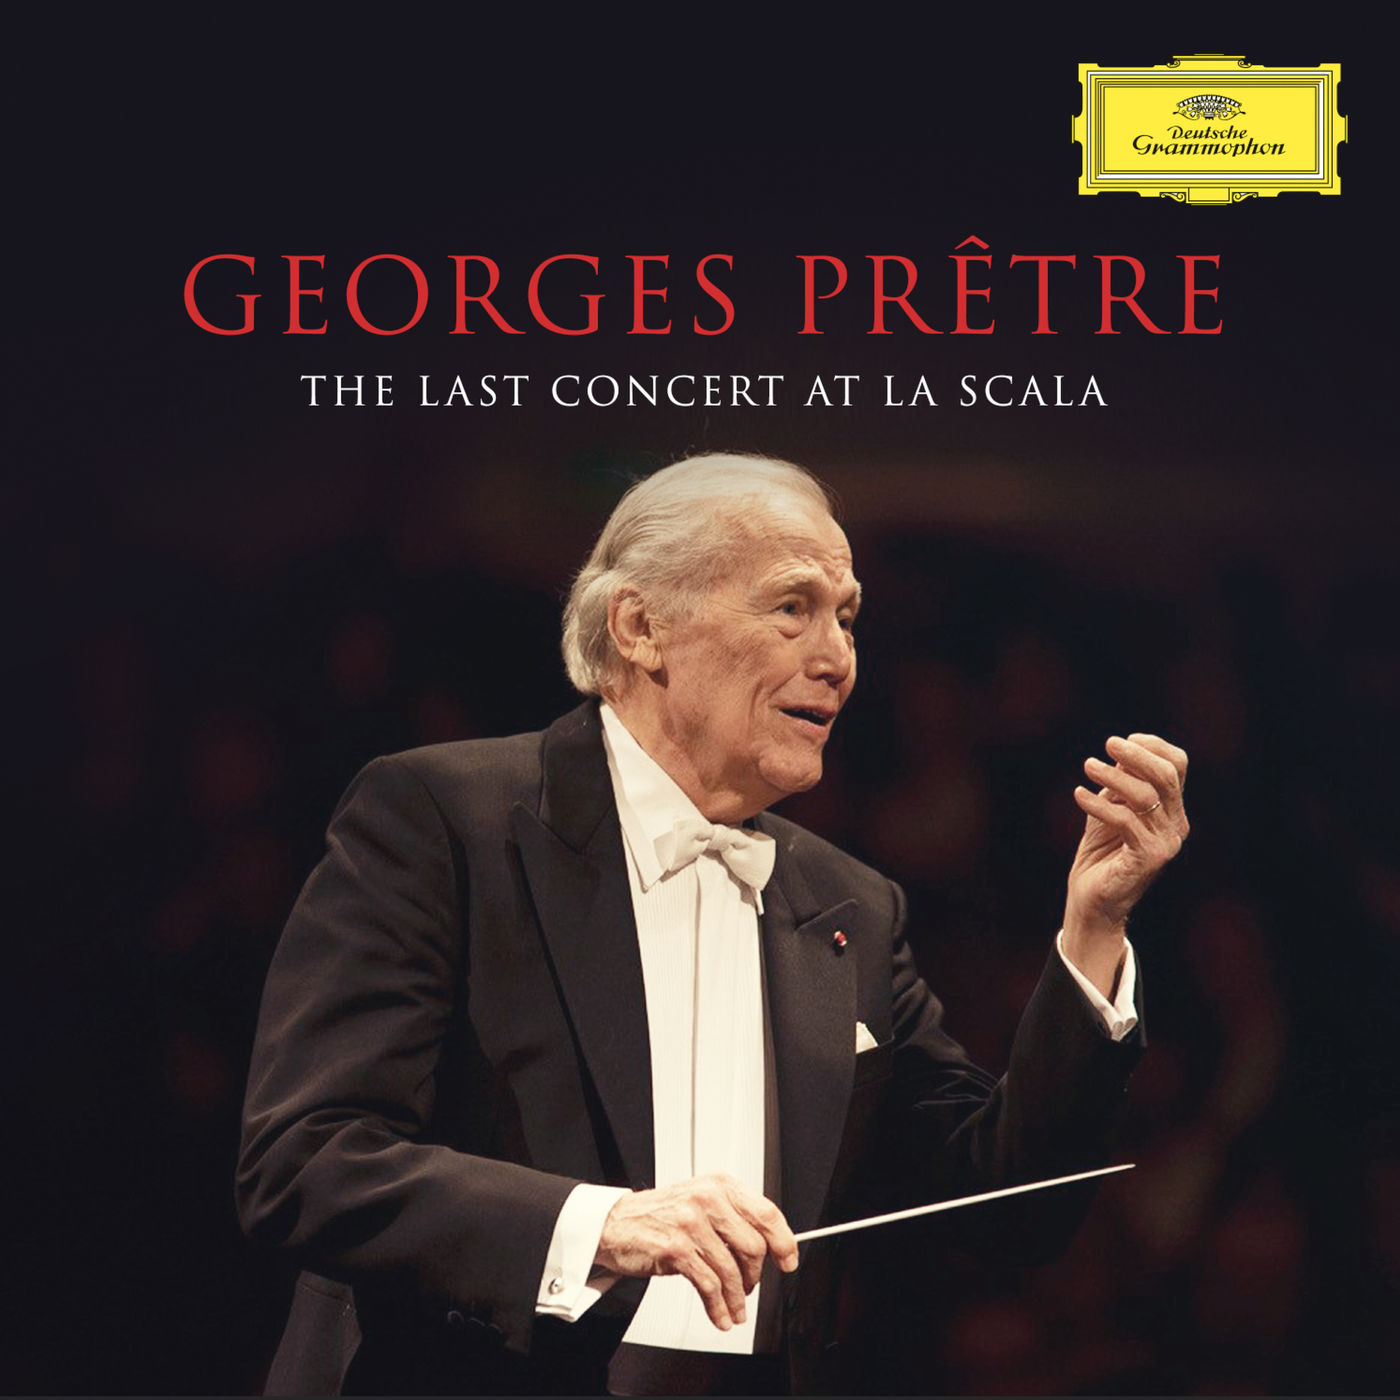 Georges Pretre, Orchestra Filarmonica della Scala – Georges Pretre – The Last Concert At La Scala (2020) [FLAC 24bit/96kHz]